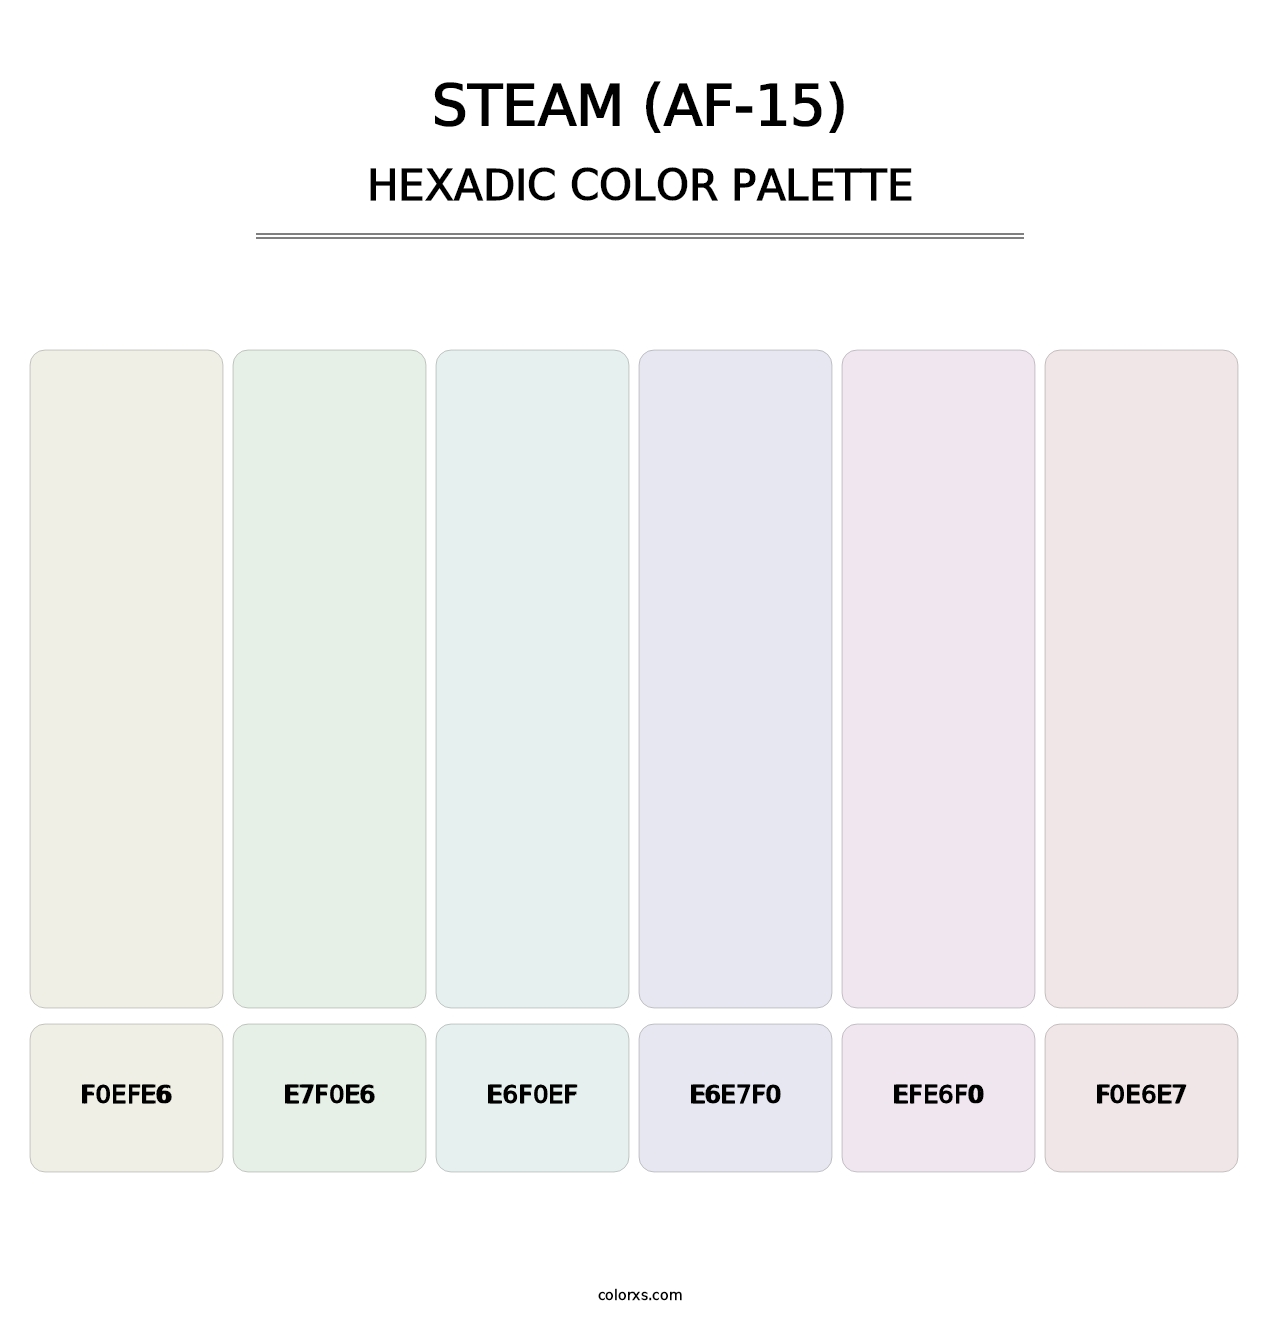 Steam (AF-15) - Hexadic Color Palette